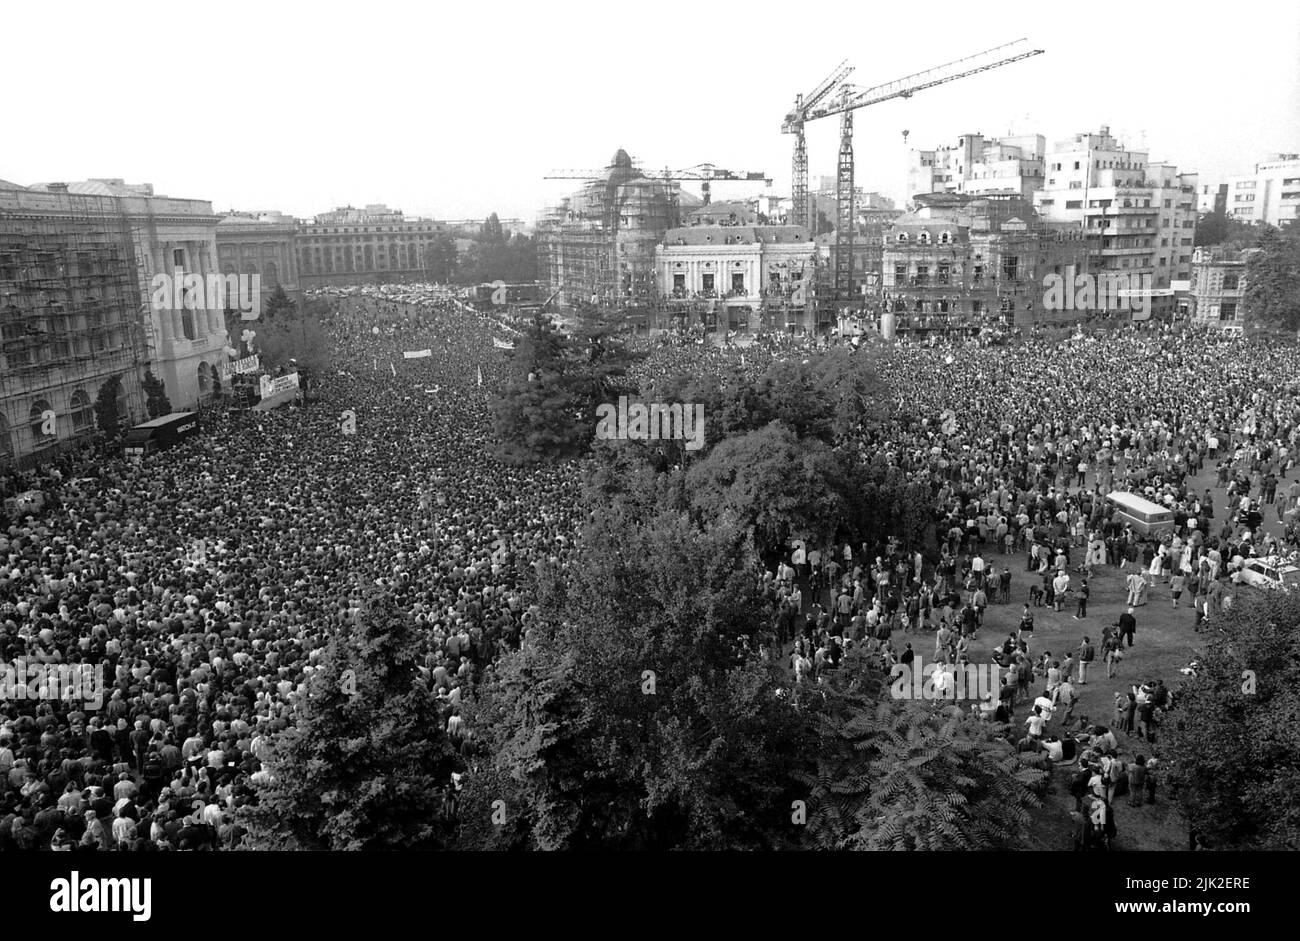 Bucarest, Roumanie, septembre 1992. Rassemblement politique organisé par la Convention démocratique roumaine (CDR) avant les élections présidentielles de 1992. Une foule énorme sur la place de la Révolution. Banque D'Images